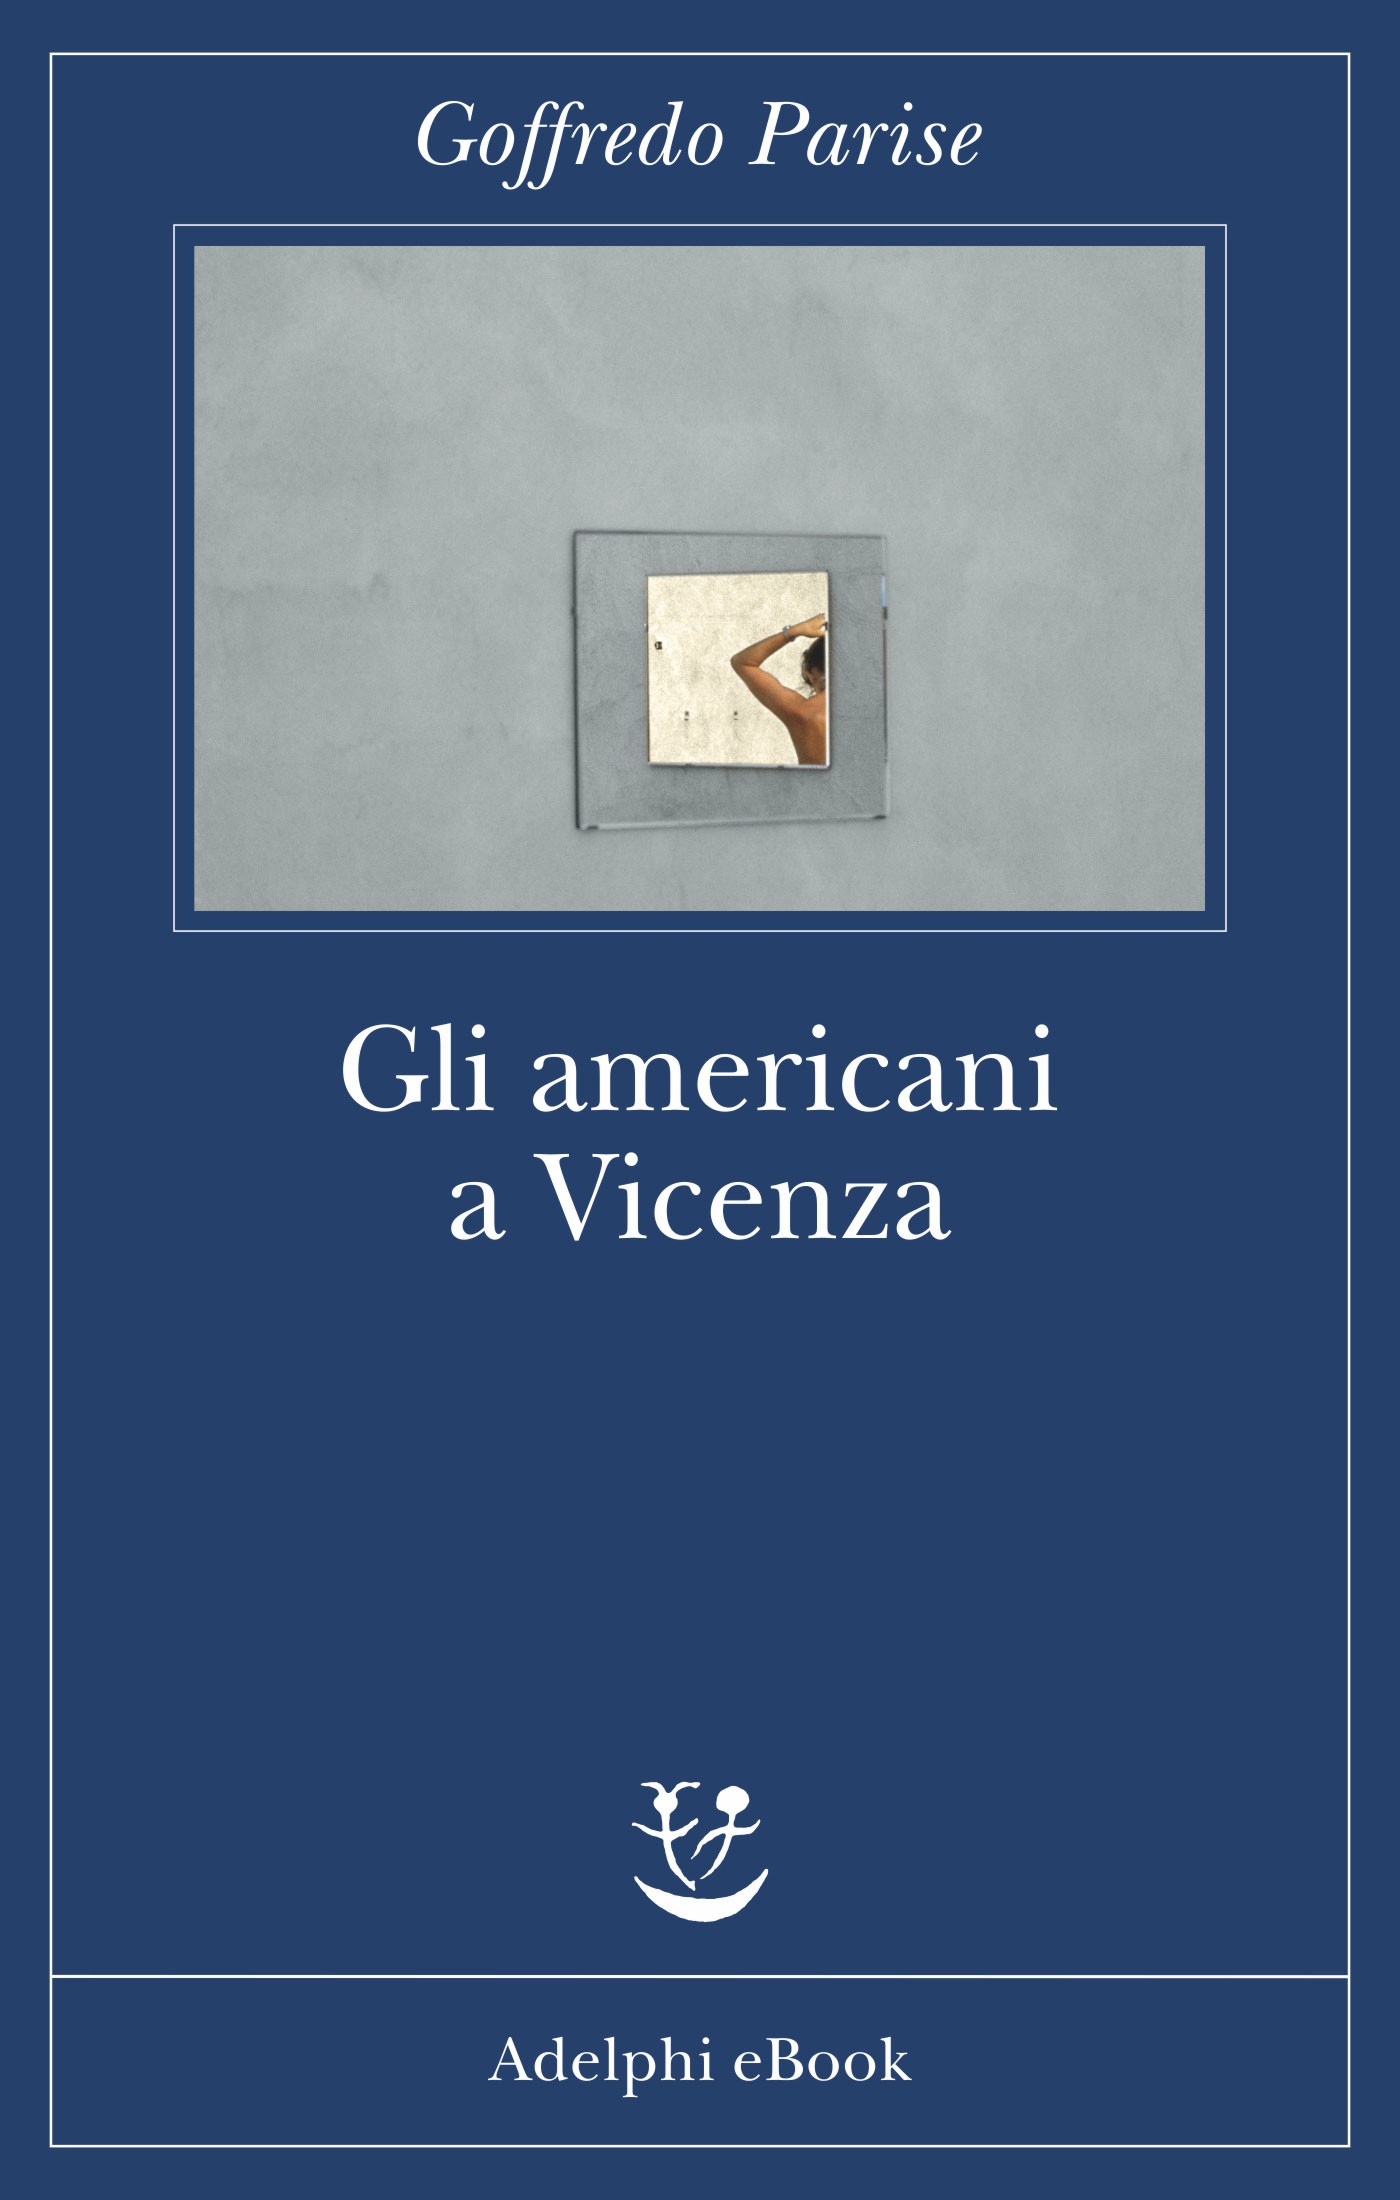 Gli americani a Vicenza - Librerie.coop